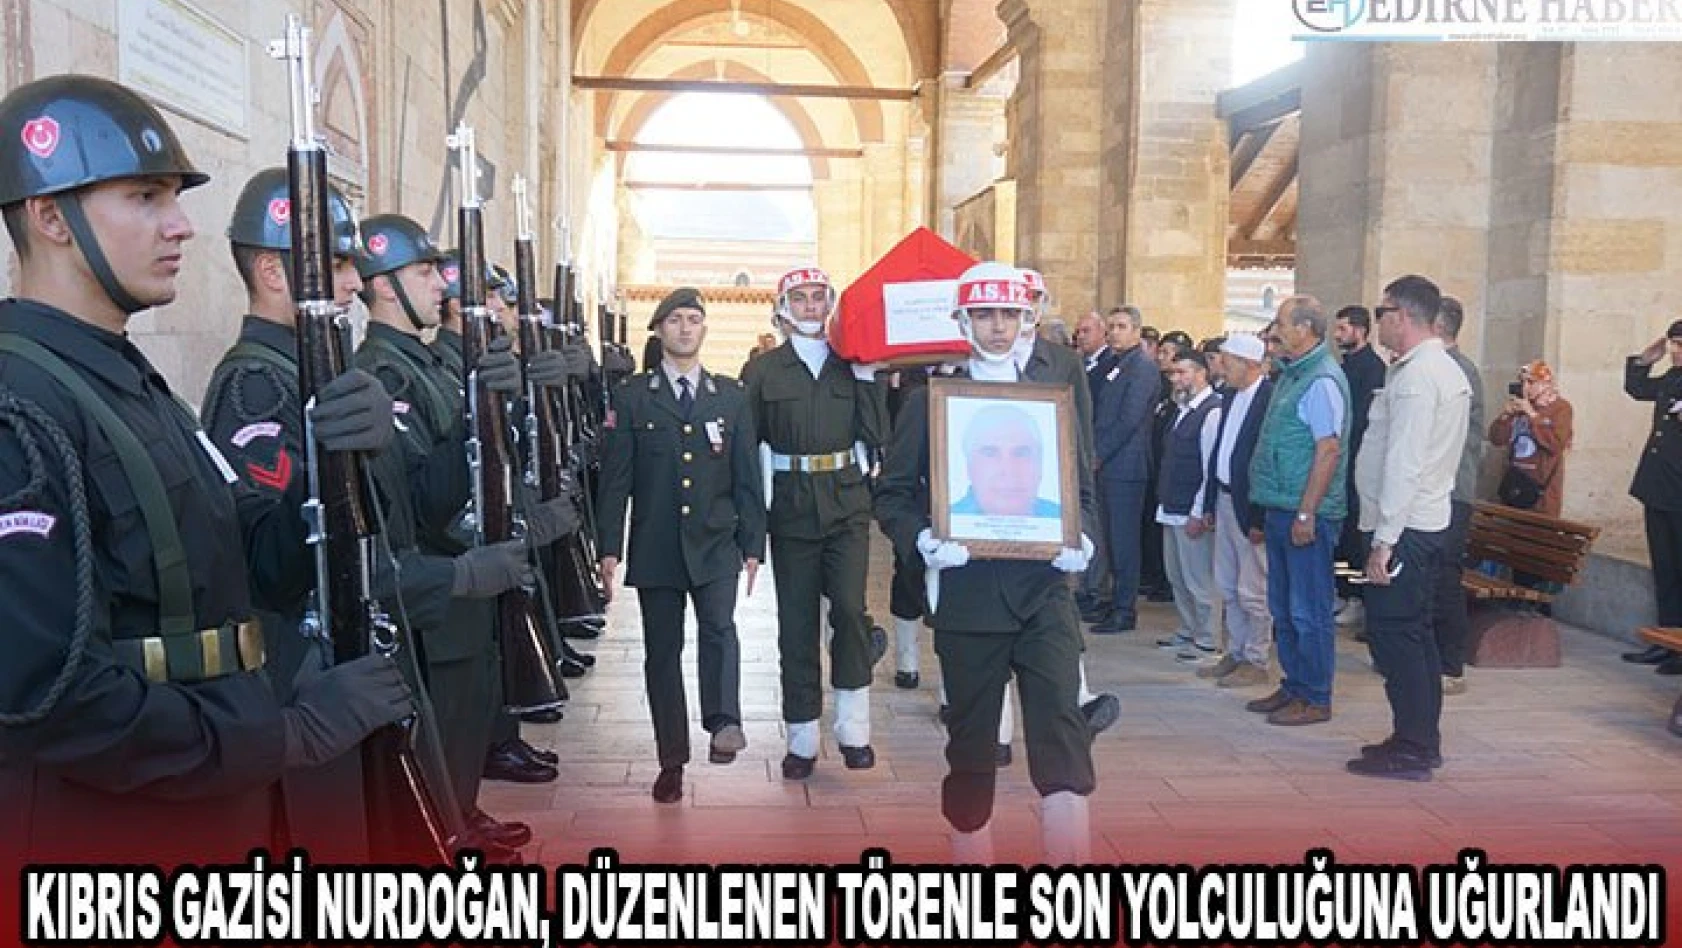 Kıbrıs Gazisi Nurdoğan, düzenlenen törenle son yolculuğuna uğurlandı